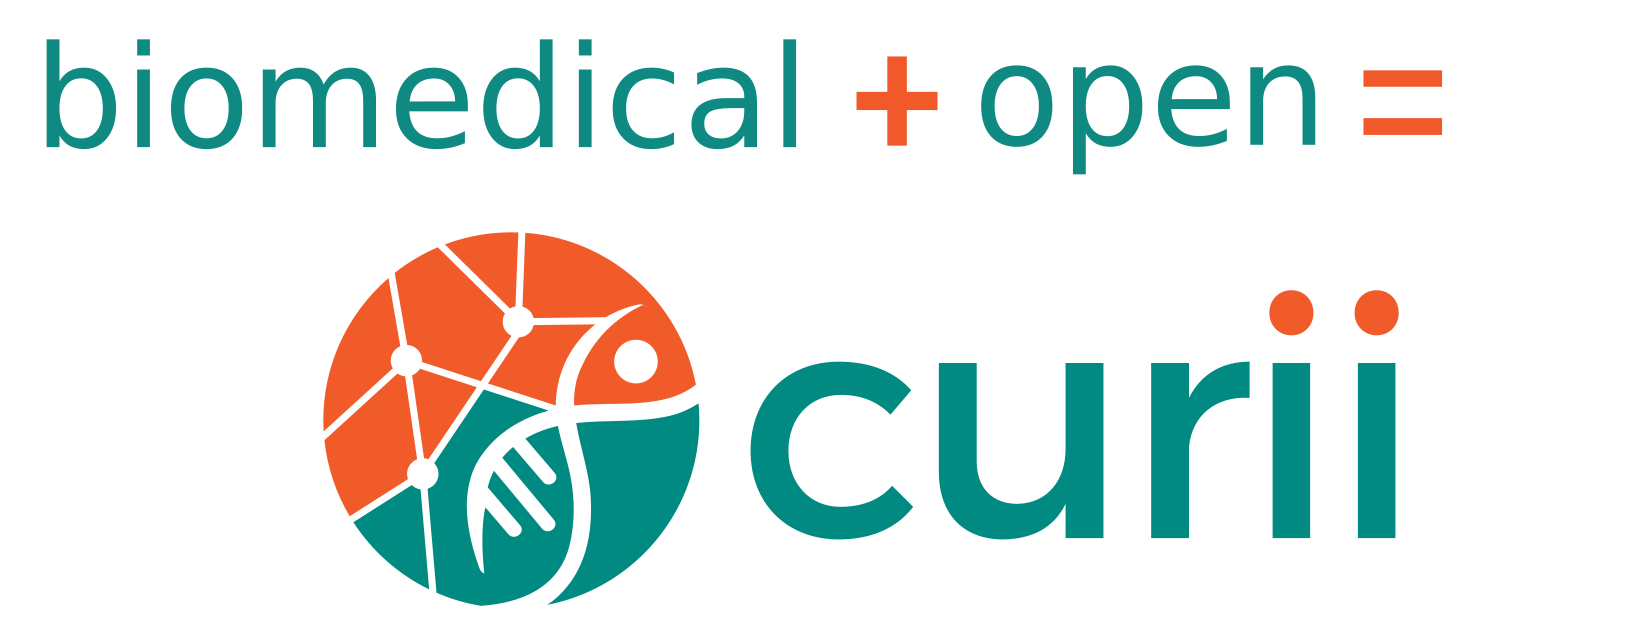 Header: biomedical + open = curii